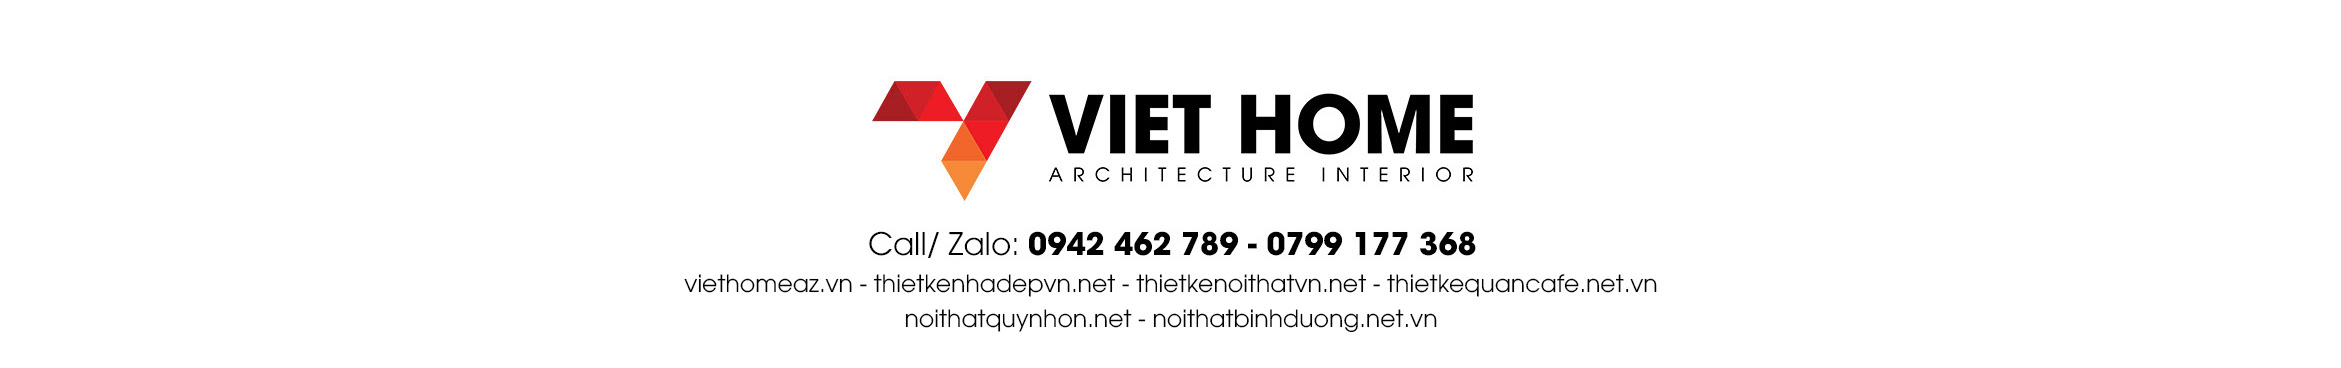 ARCHITECTURE & INTERIOR VIETHOME's profile banner